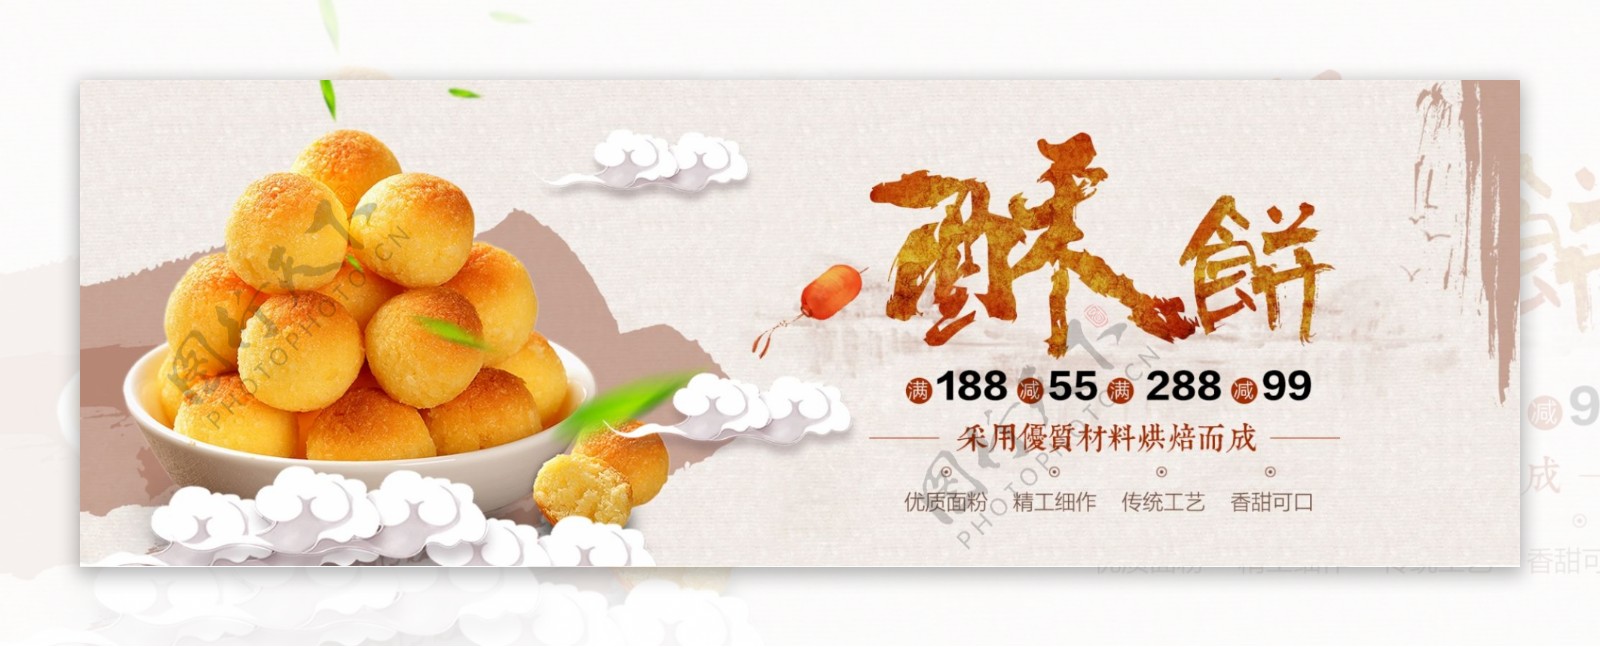 美食糕点食物零食淘宝电商海报banner